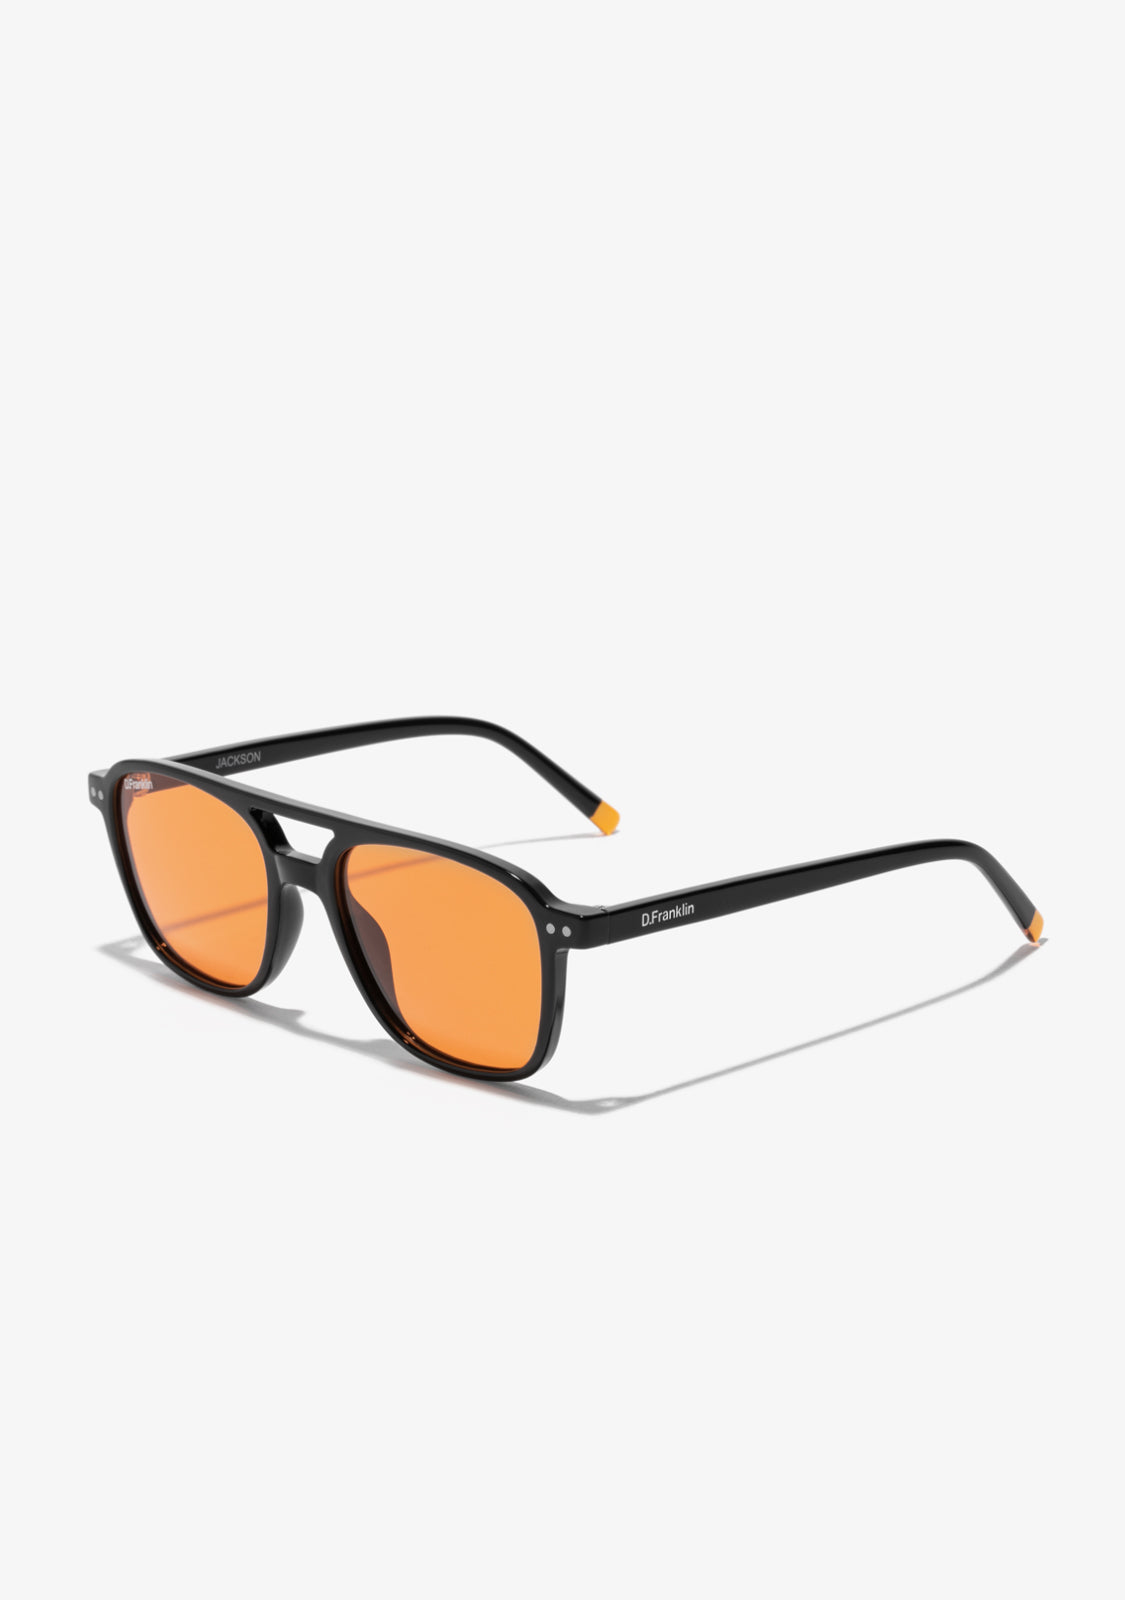 KENZO New Sunglasses Square Orange Orange KZ40144I 42E 55 19 145 | eBay